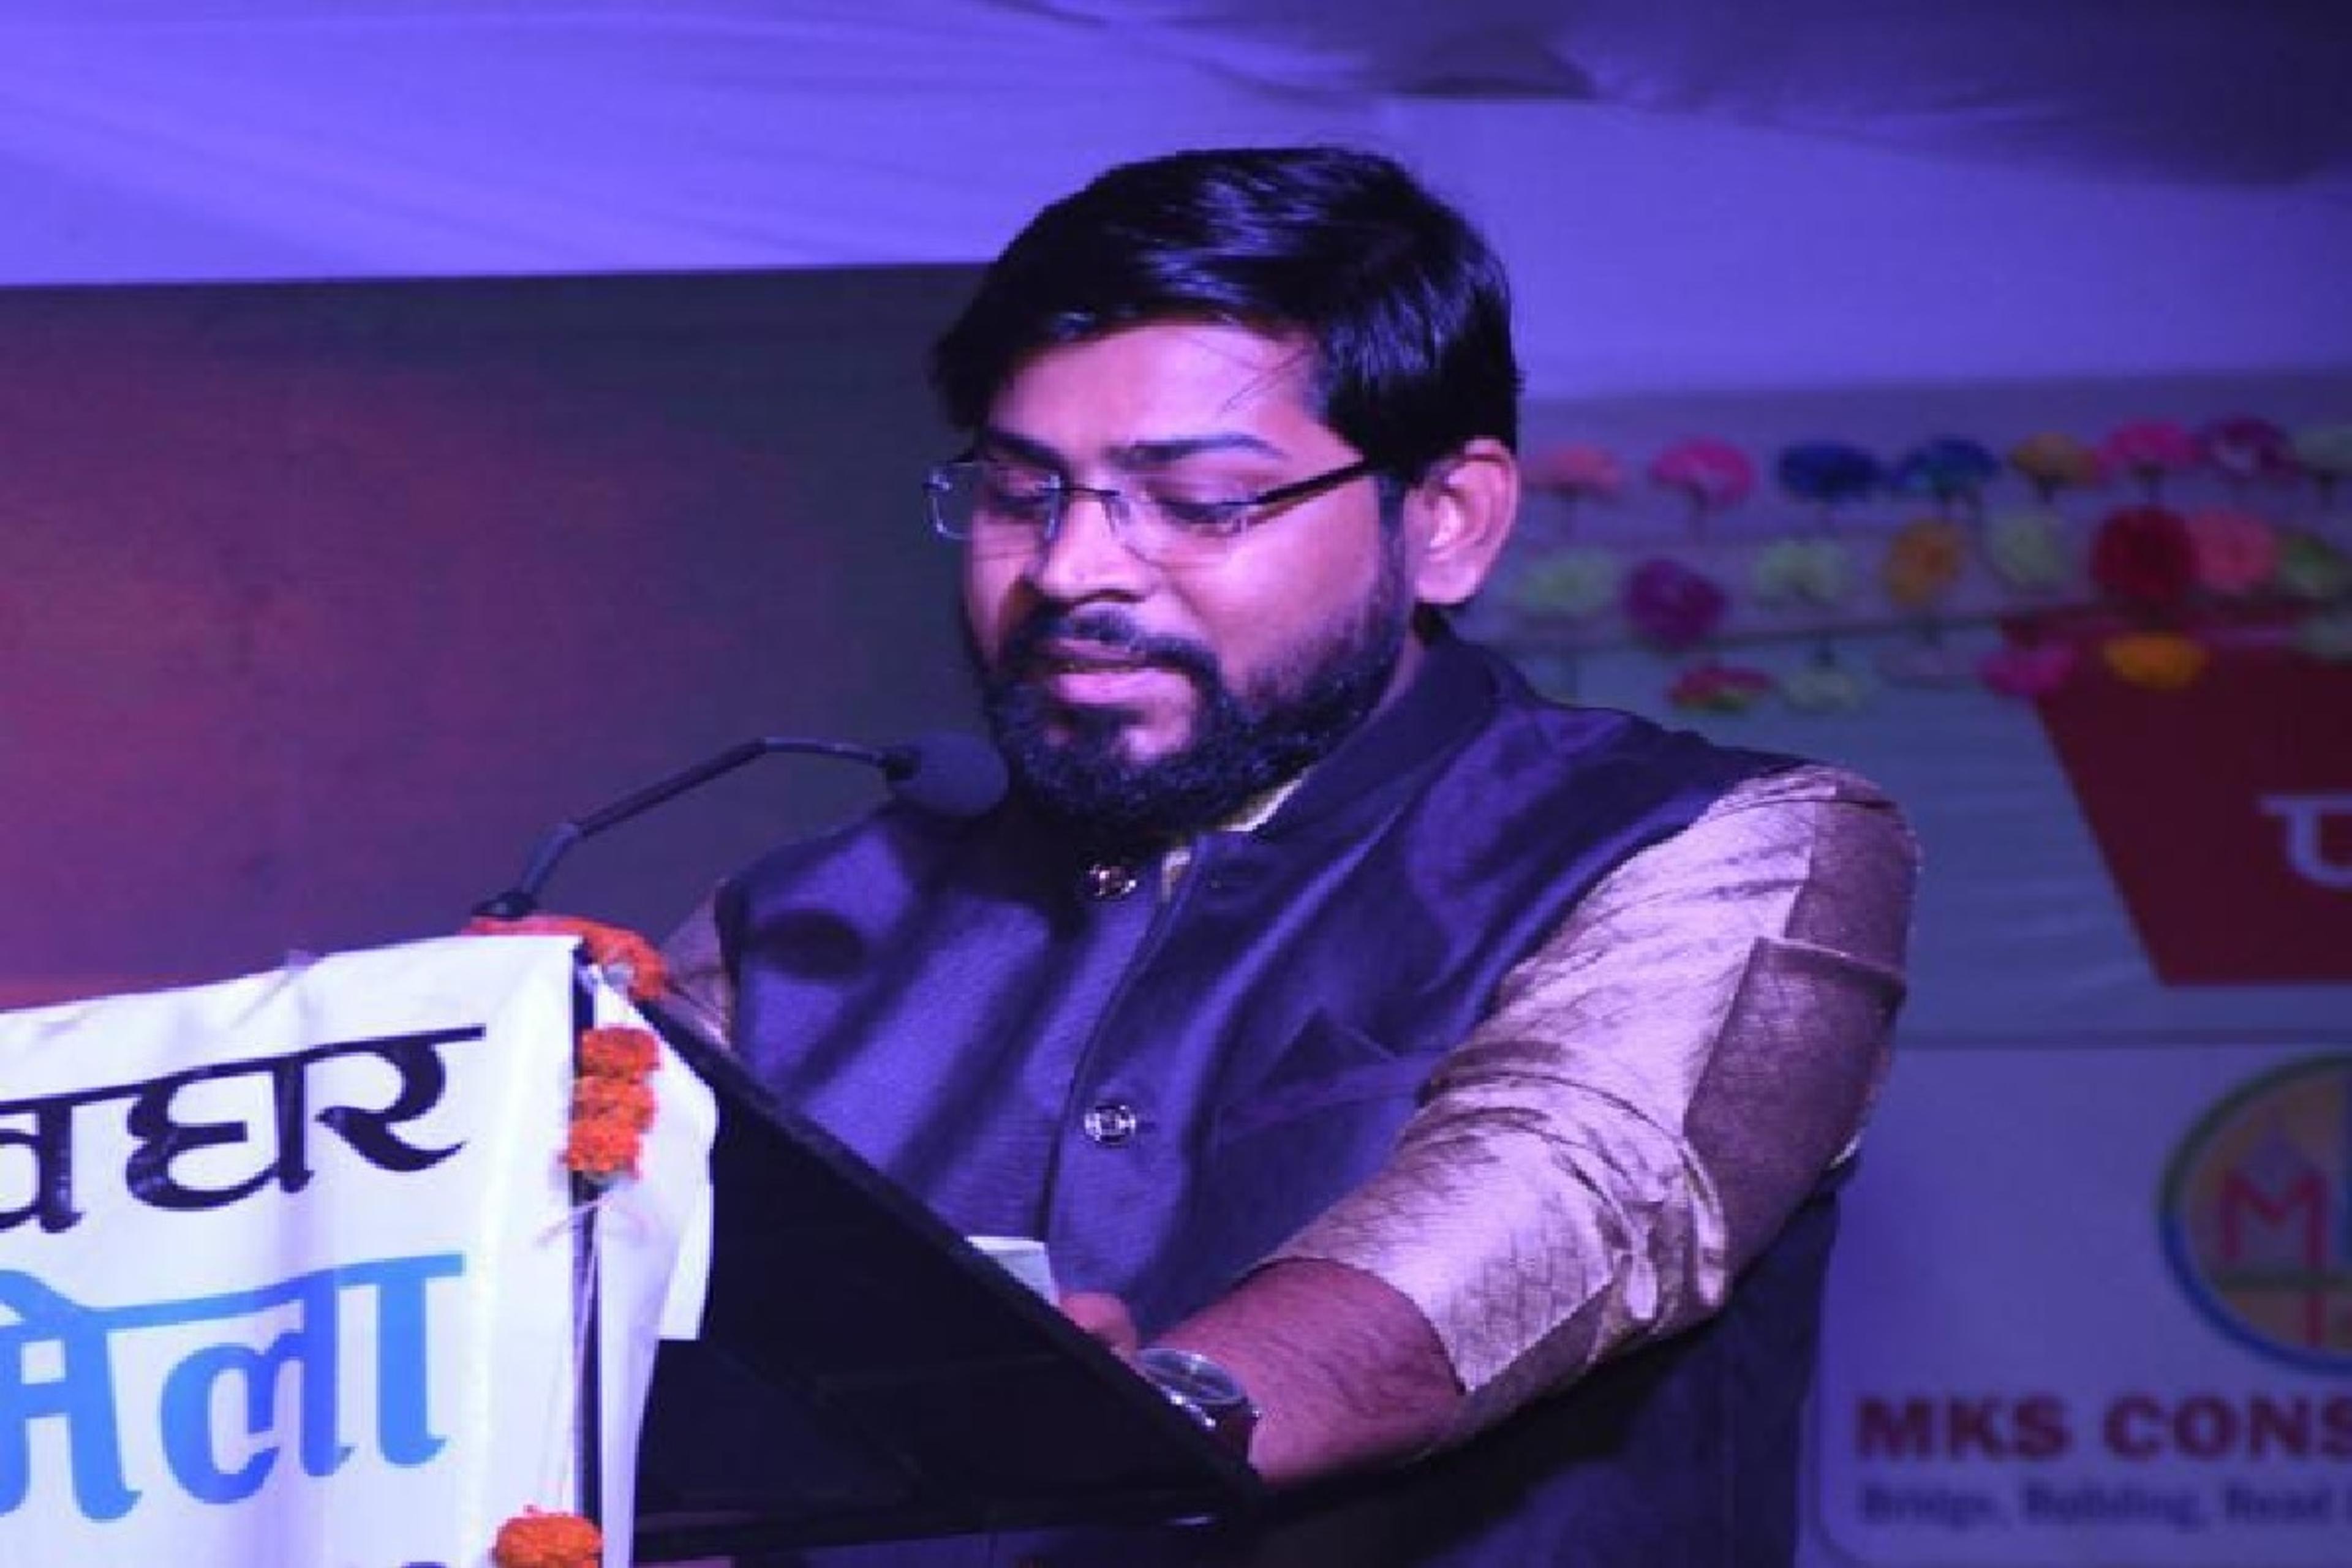 हिंदी साहित्य में सफलता की उड़ान भर रहे जमशेदपुर के लेखक अंशुमन भगत, अपनी लेखनी
से बनाई पहचान